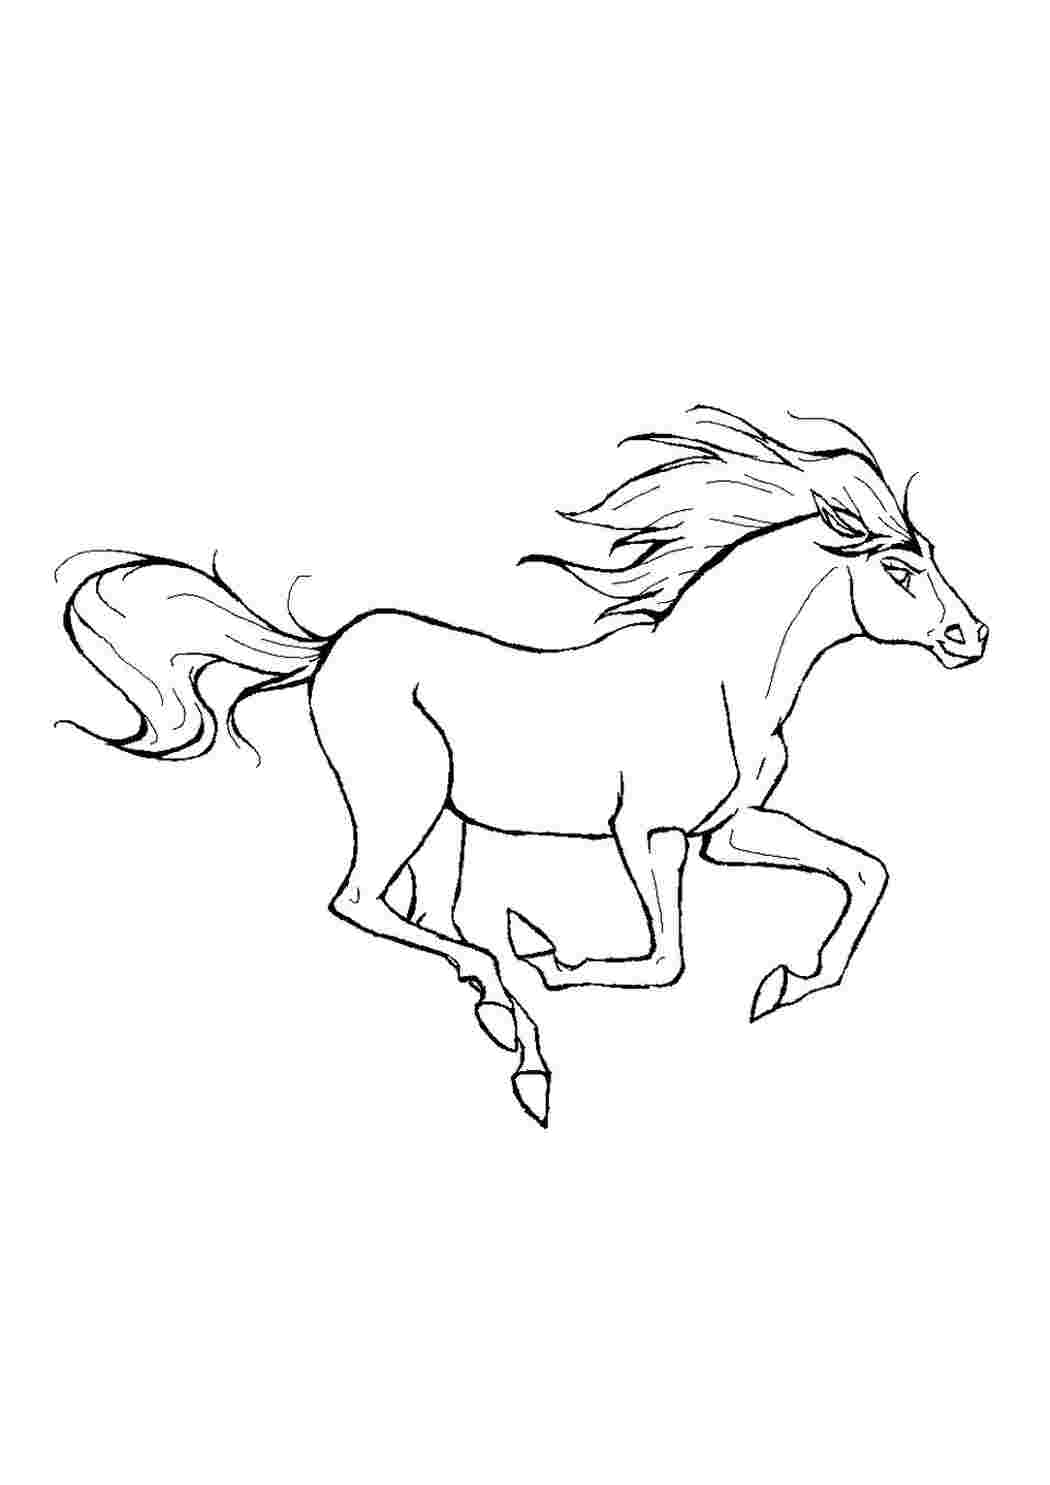 Раскраски картинки на рабочий стол онлайн Лошадь мчится с развивающимися хвостой и гривой на ветру Скачать раскраски для мальчиков